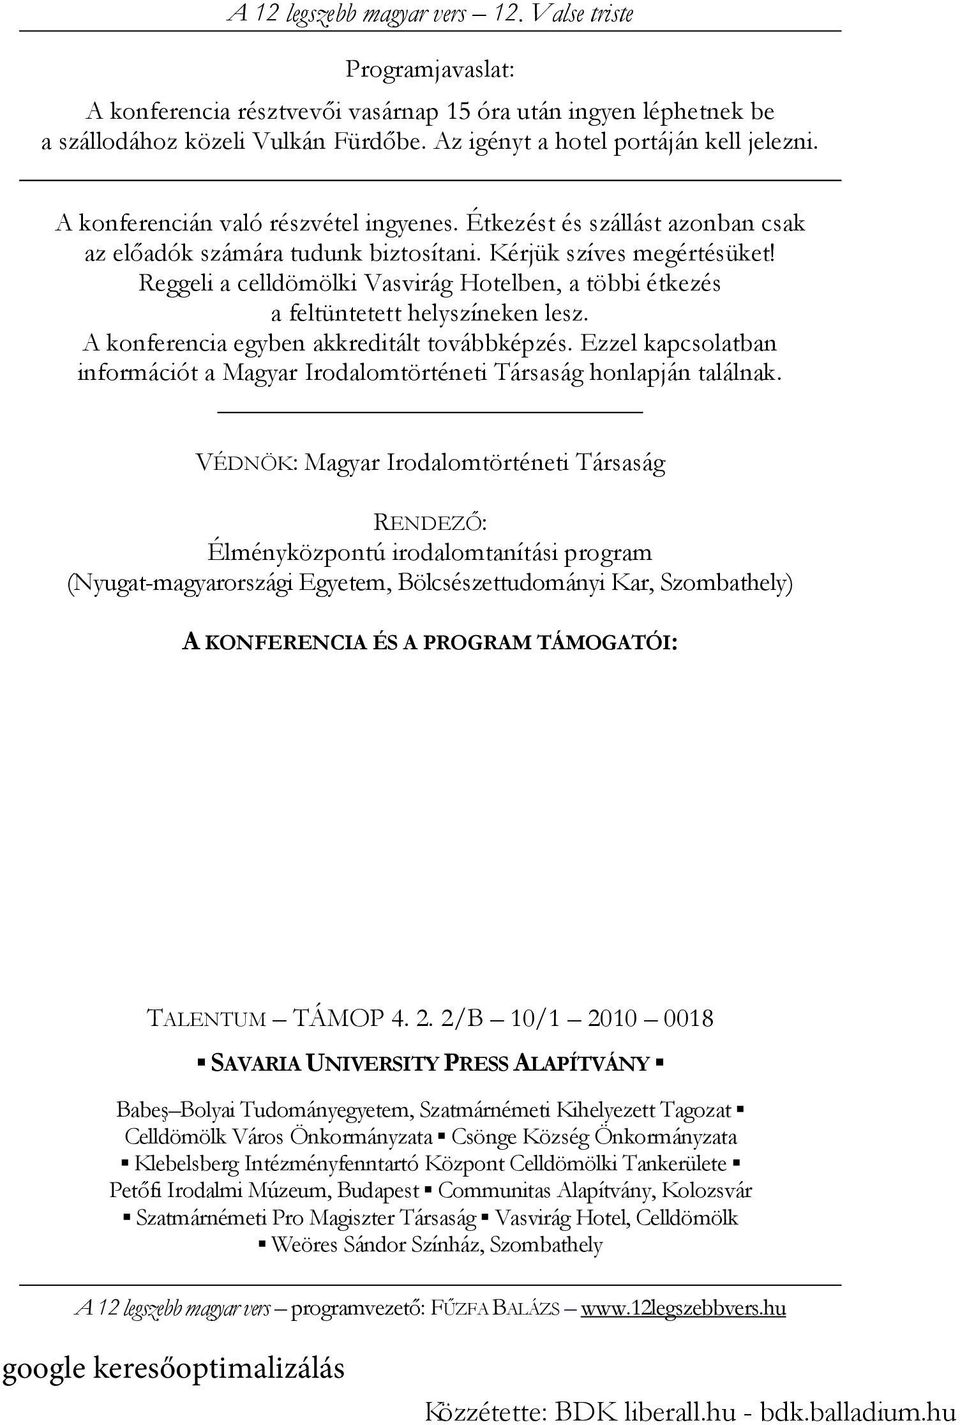 A konferencia egyben akkreditált továbbképzés. Ezzel kapcsolatban információt a Magyar Irodalomtörténeti Társaság honlapján találnak.